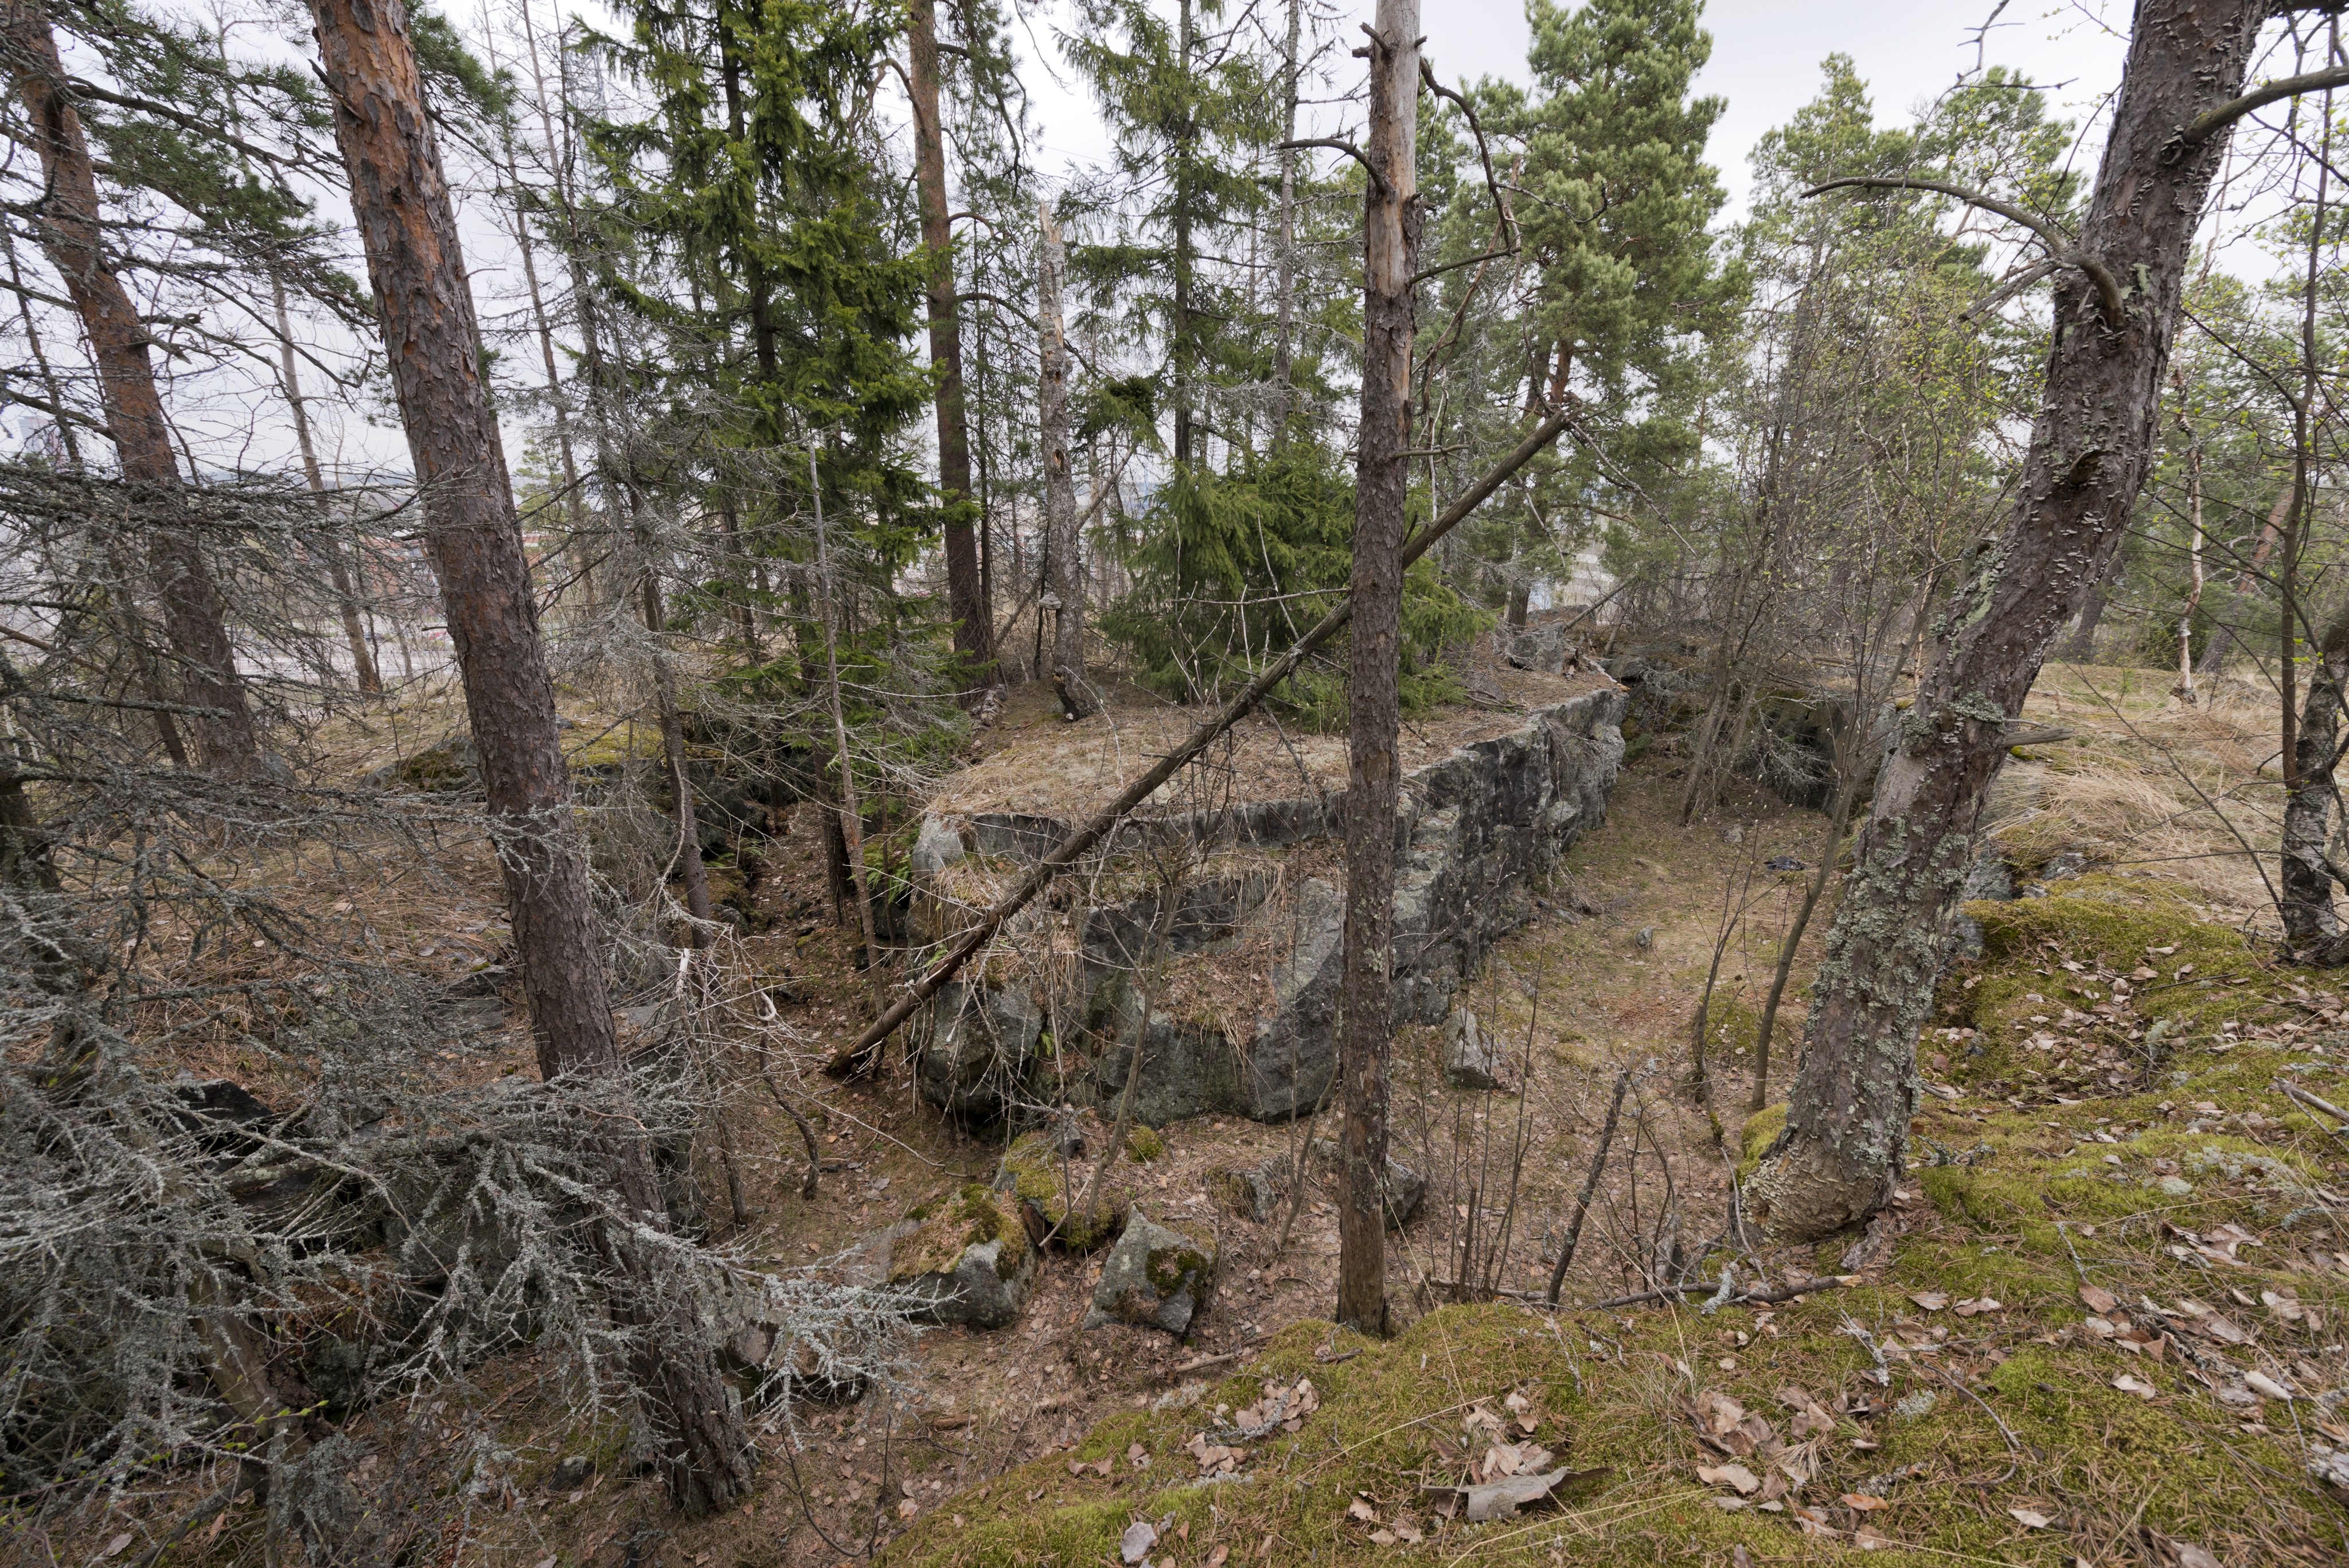 Ruukinranta. Ensimmäisen maailmansodan aikainen maalinnoitus, puolustusasema XXXVI:1 Ruukinrannassa, Espoossa. Kuvassa näkyy aseman XXXVI:1 itäosaan kuuluvaa, kallioon louhittua yhdyshautaa. Hauta jakautuu keskeltä kahdeksi kalliota kiertäväksi osaksi. Seinämät ovat jyrkät ja pohjalla on kivenlohkareita. Vasemmalla puiden lomasta erottuu rakennuksia. Kuvaussuuntana mahdollisesti koillinen.